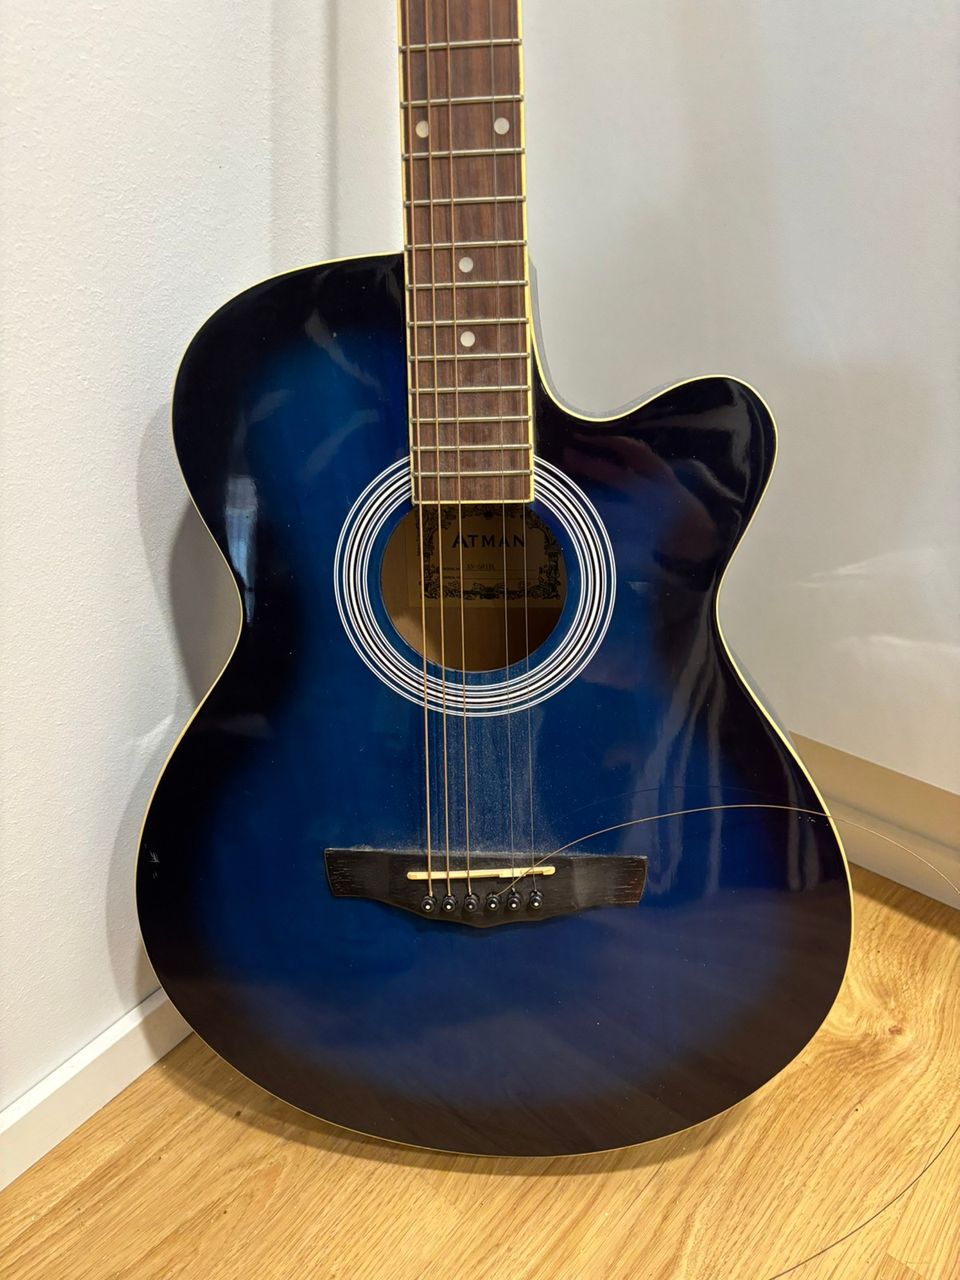 Akustinen sininen kitara myynnissä (kielet vaihdettava)